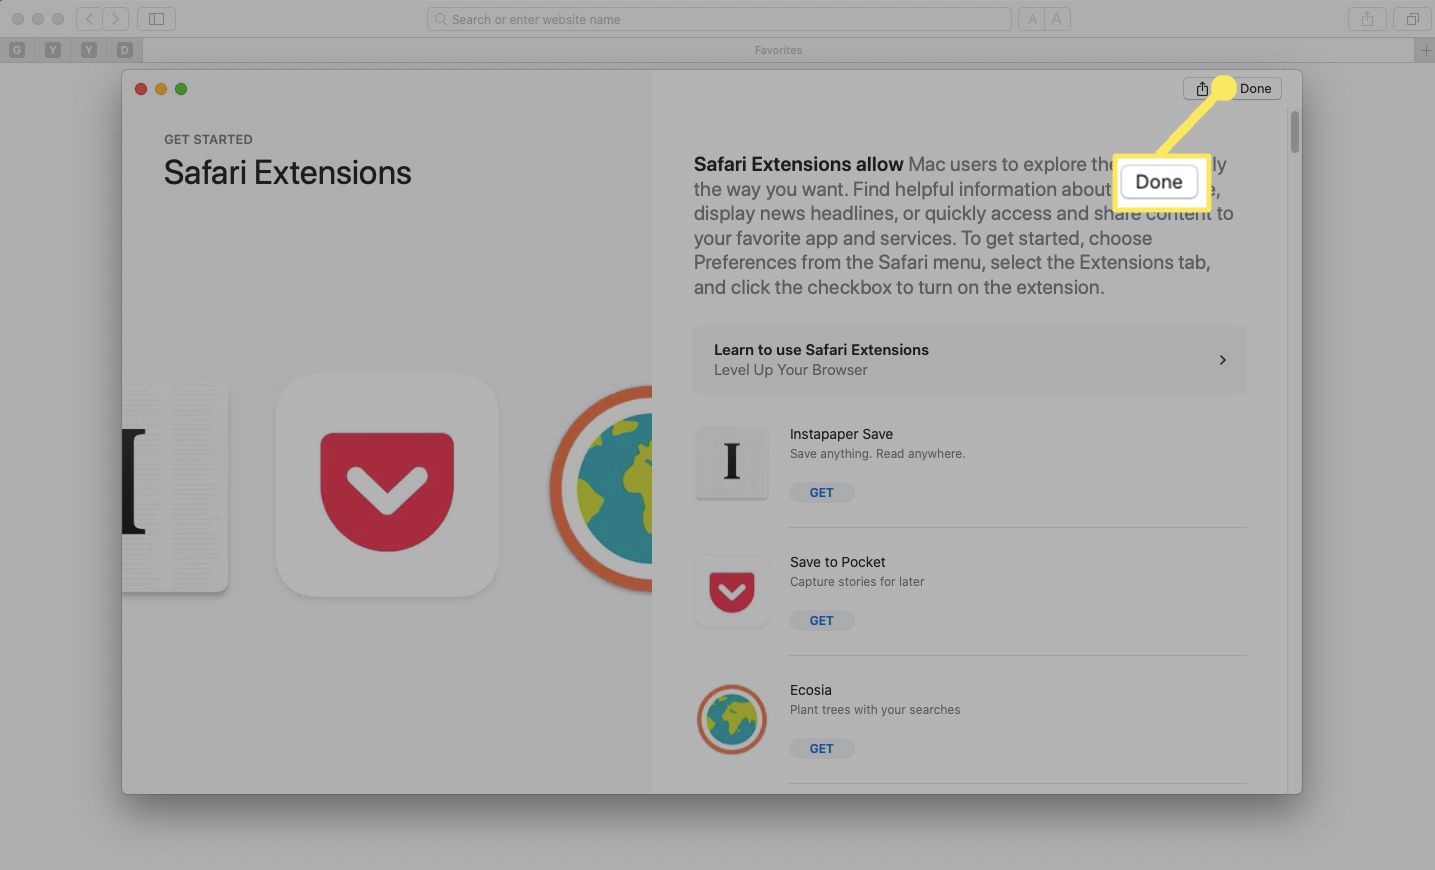 De introductiepagina van de Mac App Store